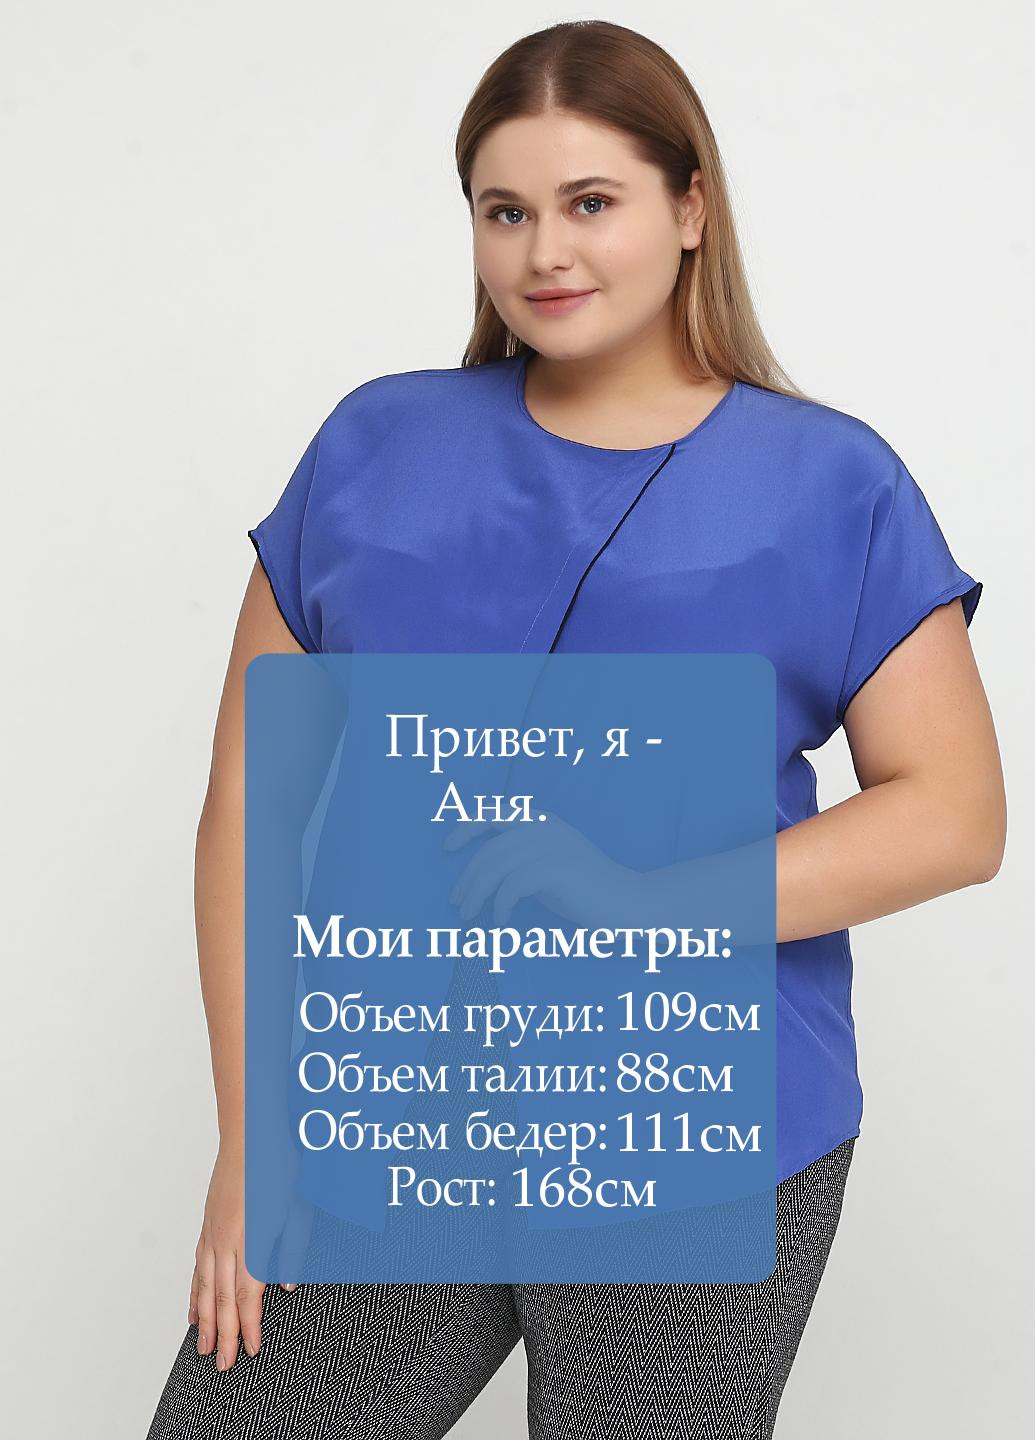 Синяя летняя блуза New York & Company